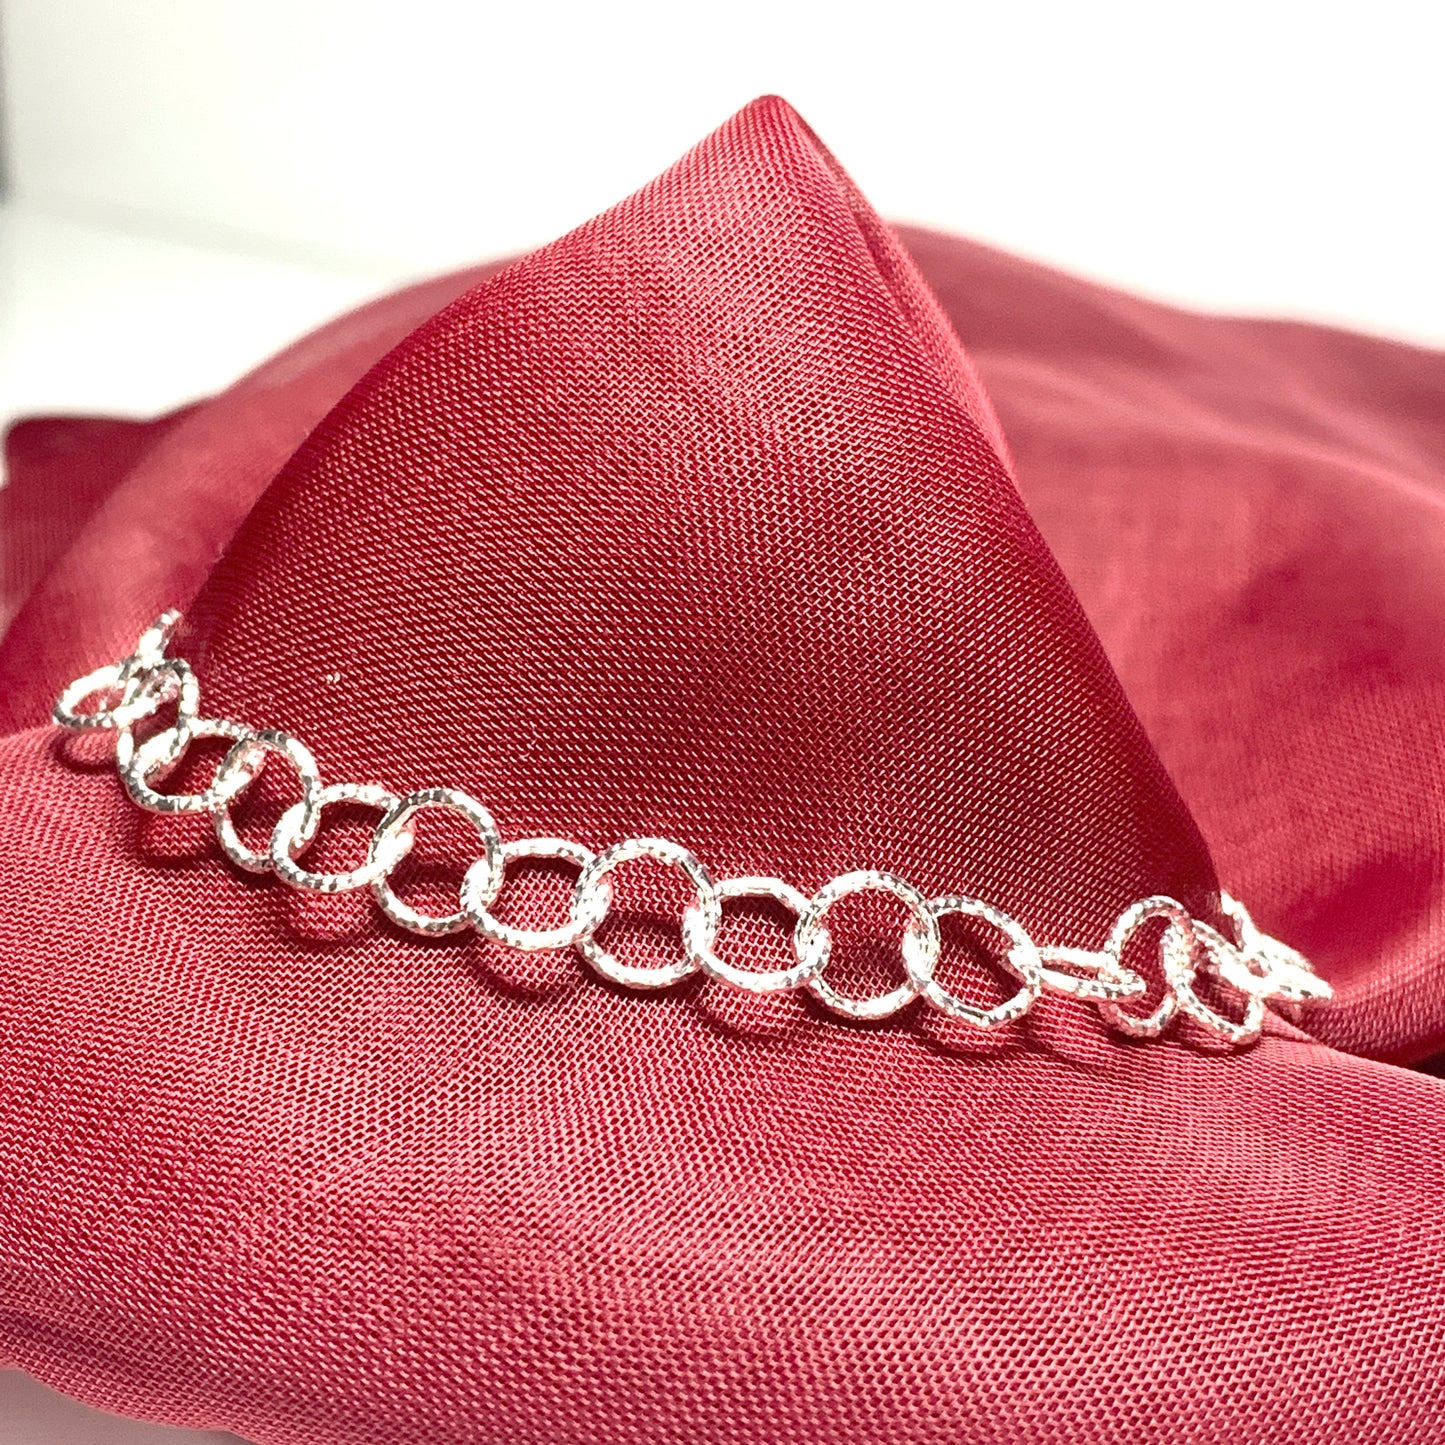 Ladies patterned round belcher link sterling silver bracelet